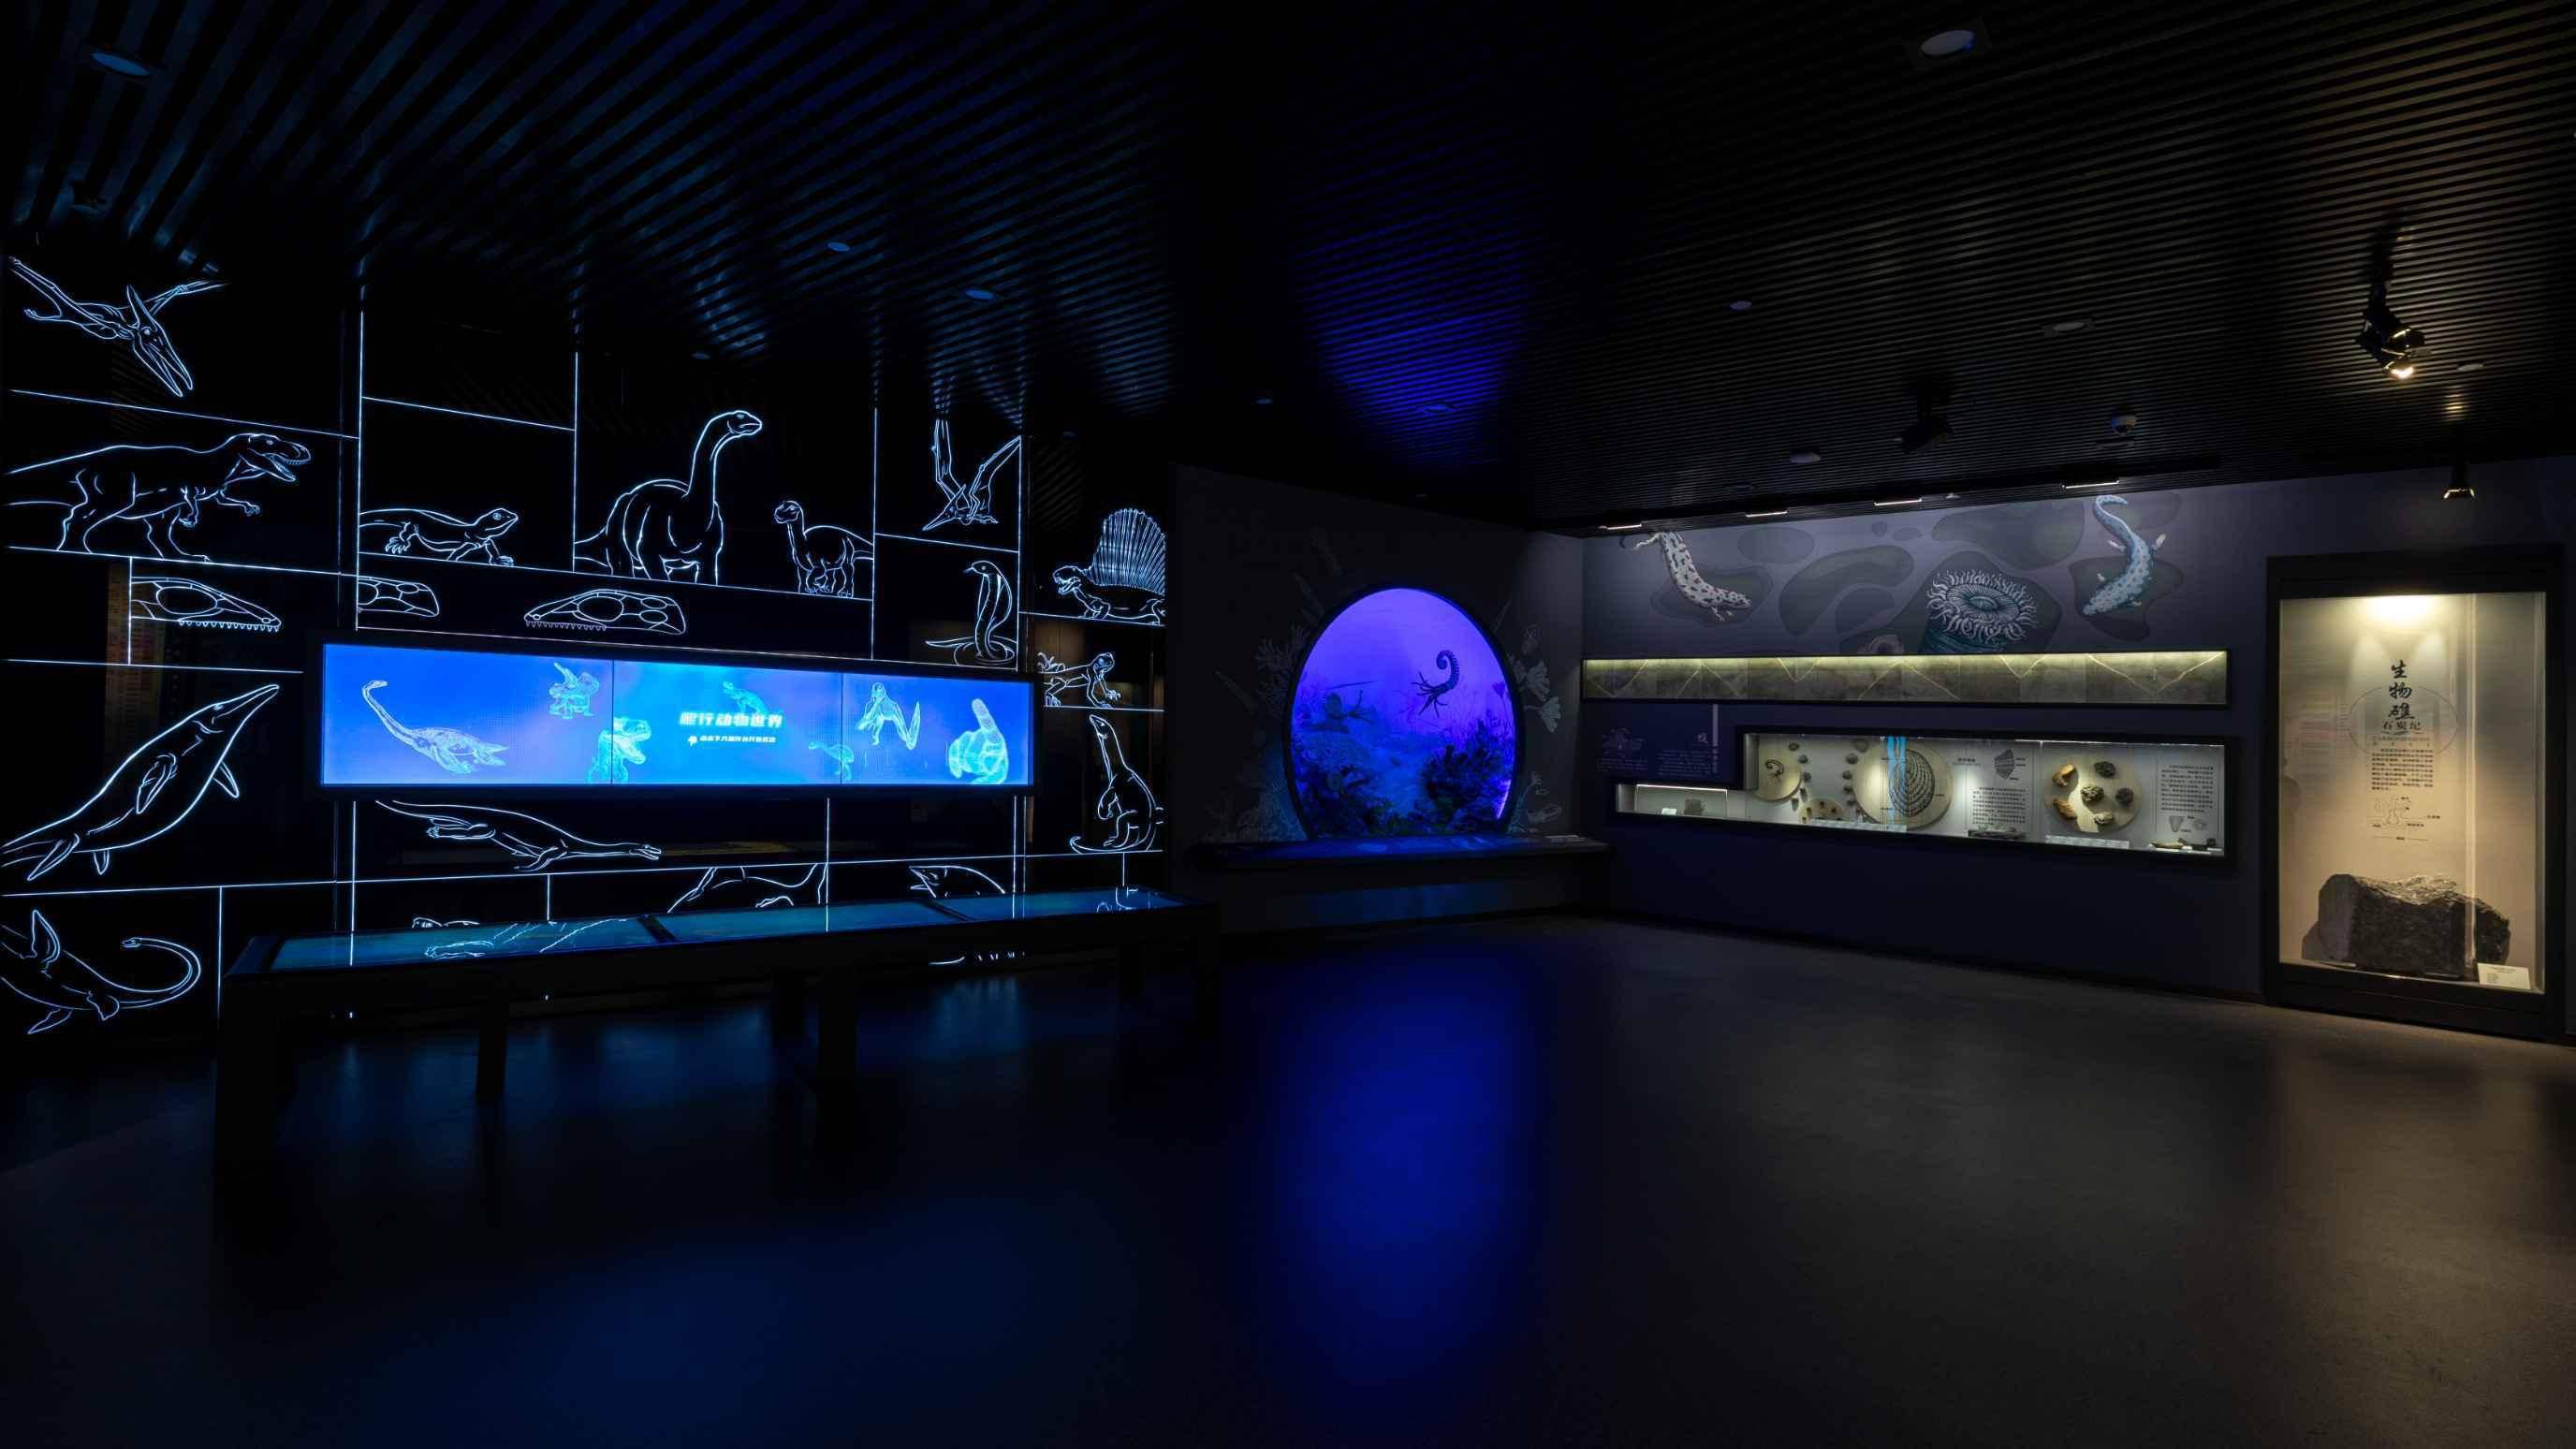 这是一个展览空间，墙上有海洋生物的线条画，中间展示屏幕和展示柜，整体色调偏暗，营造出深海氛围。